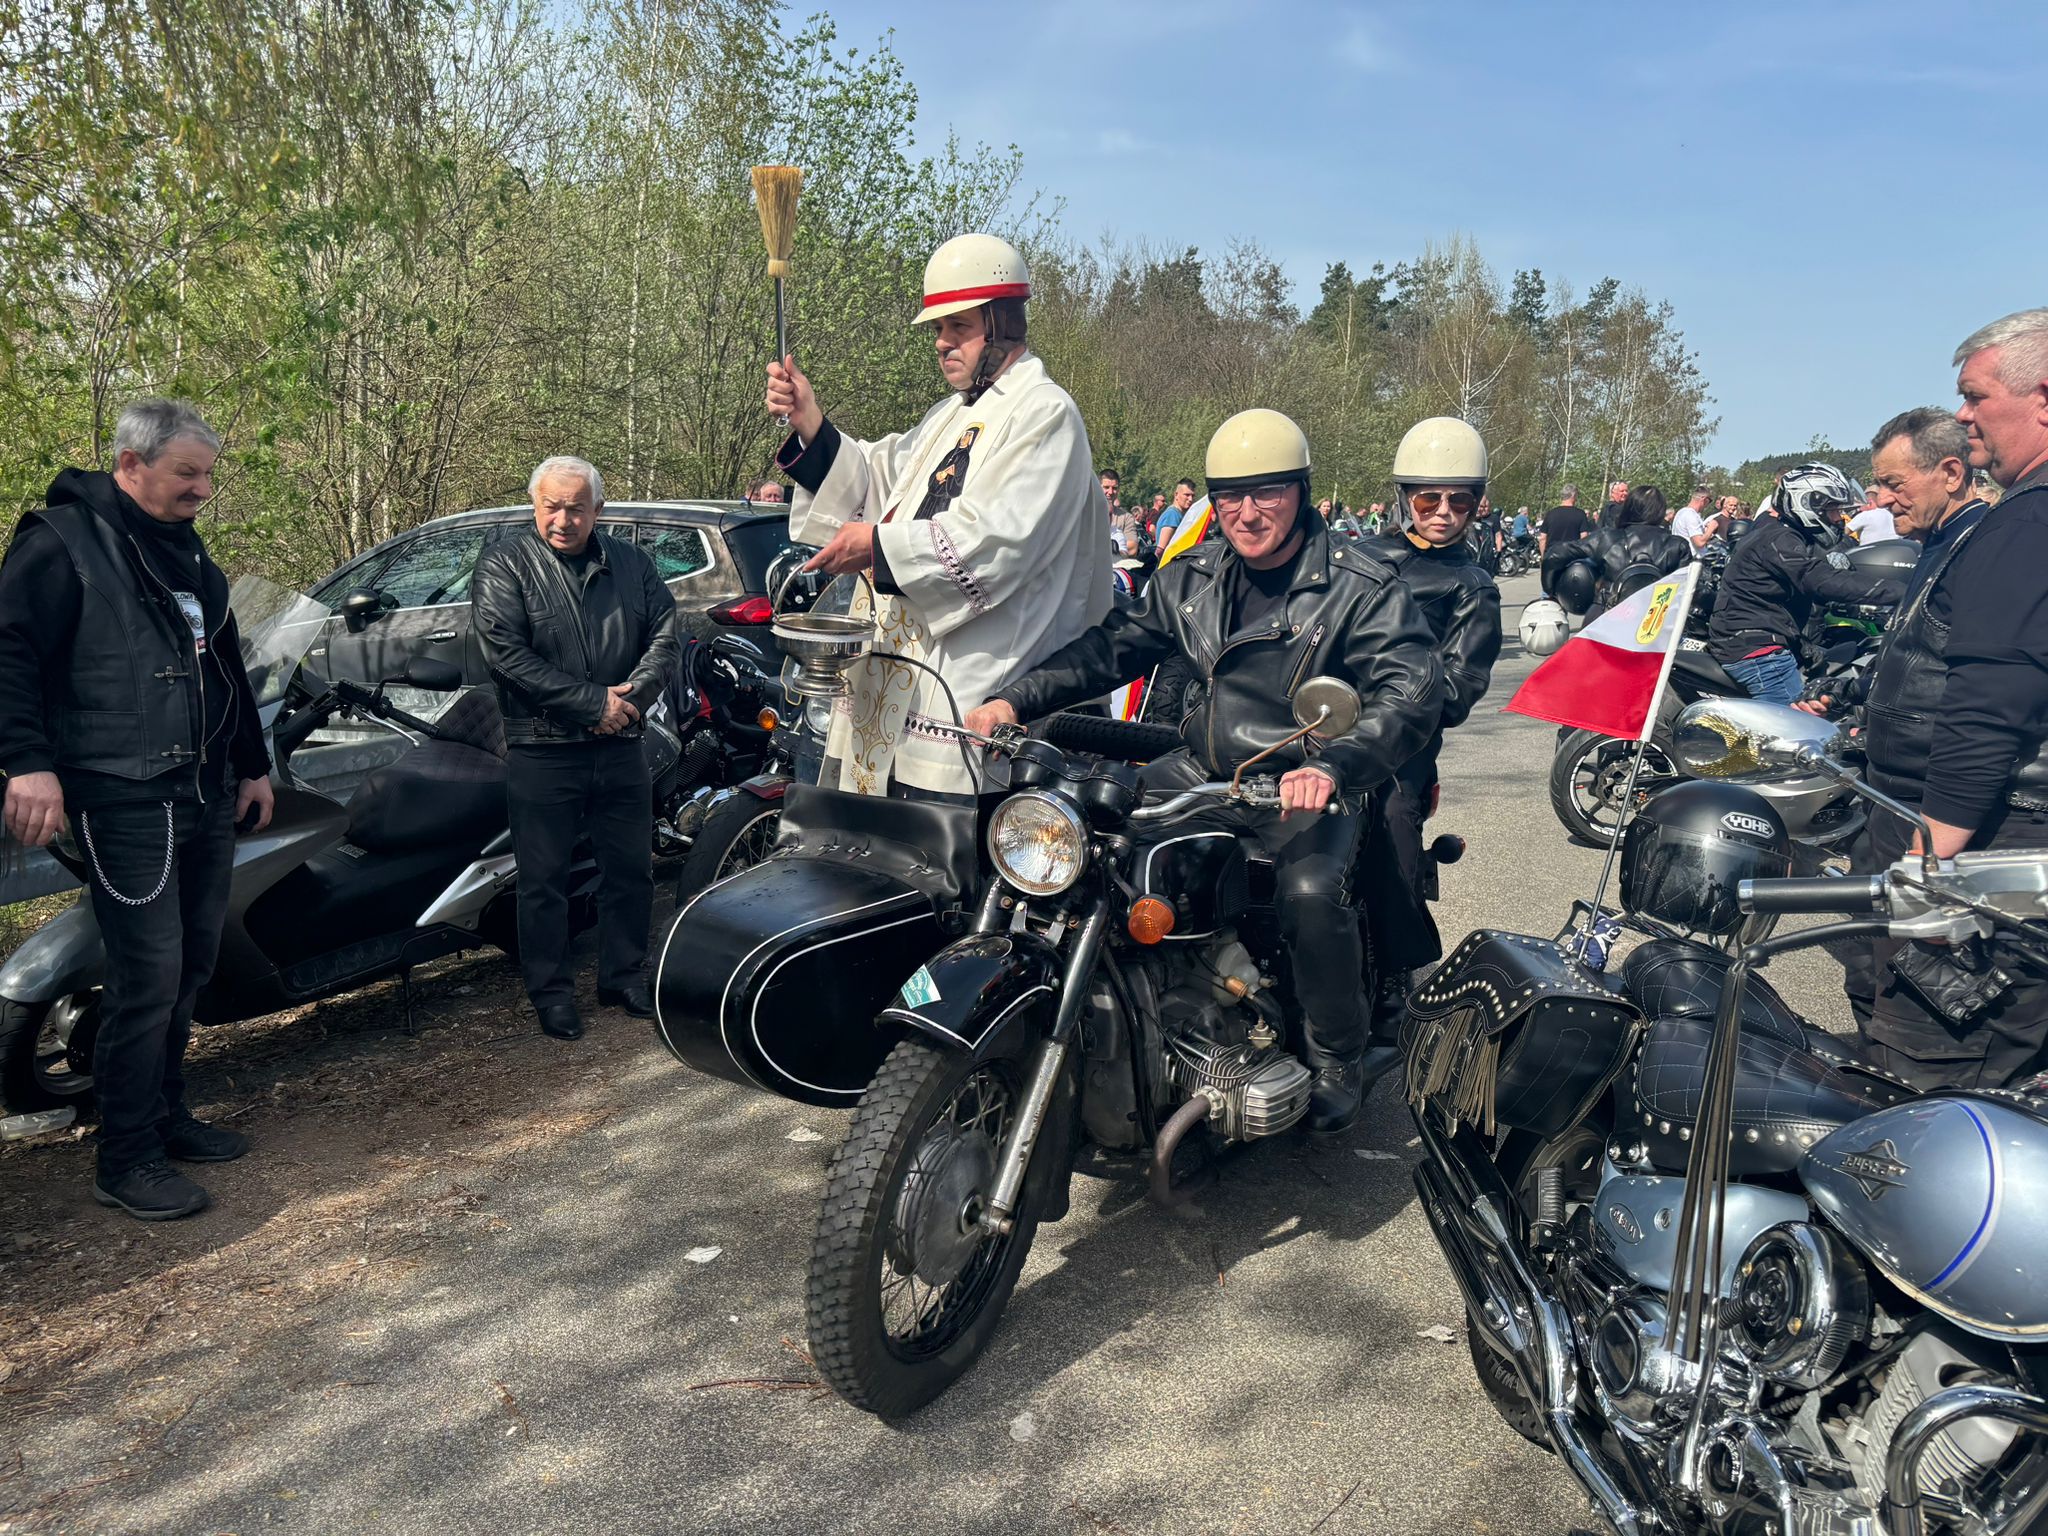 Rekordowy zlot motocyklistów w Przedborowie FILM